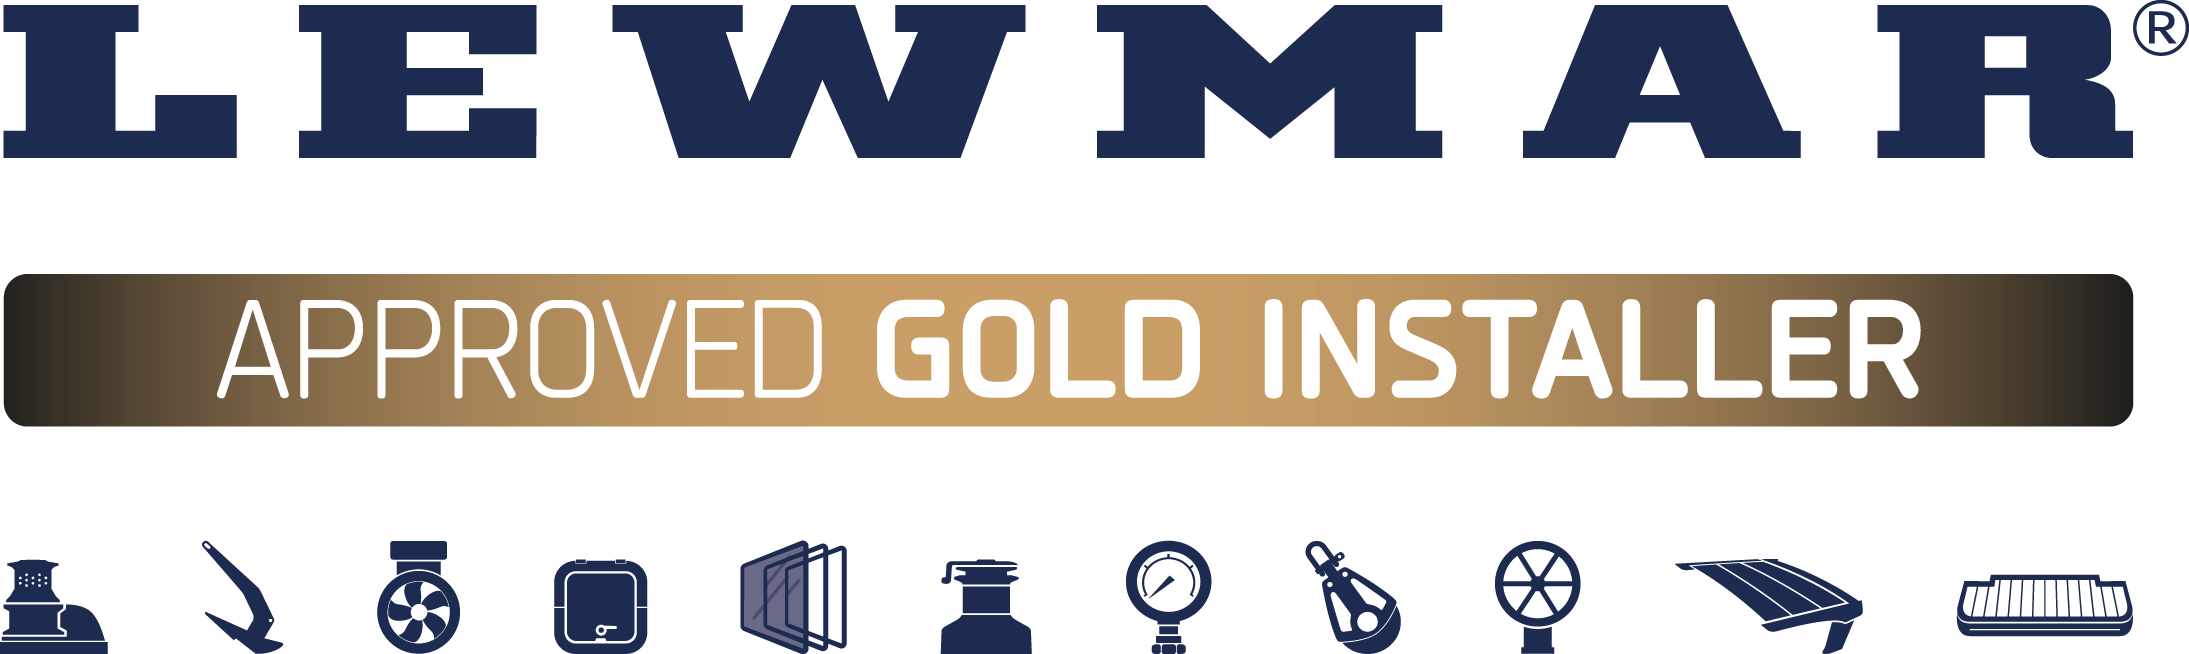 Lewmar Approved Gold Installer